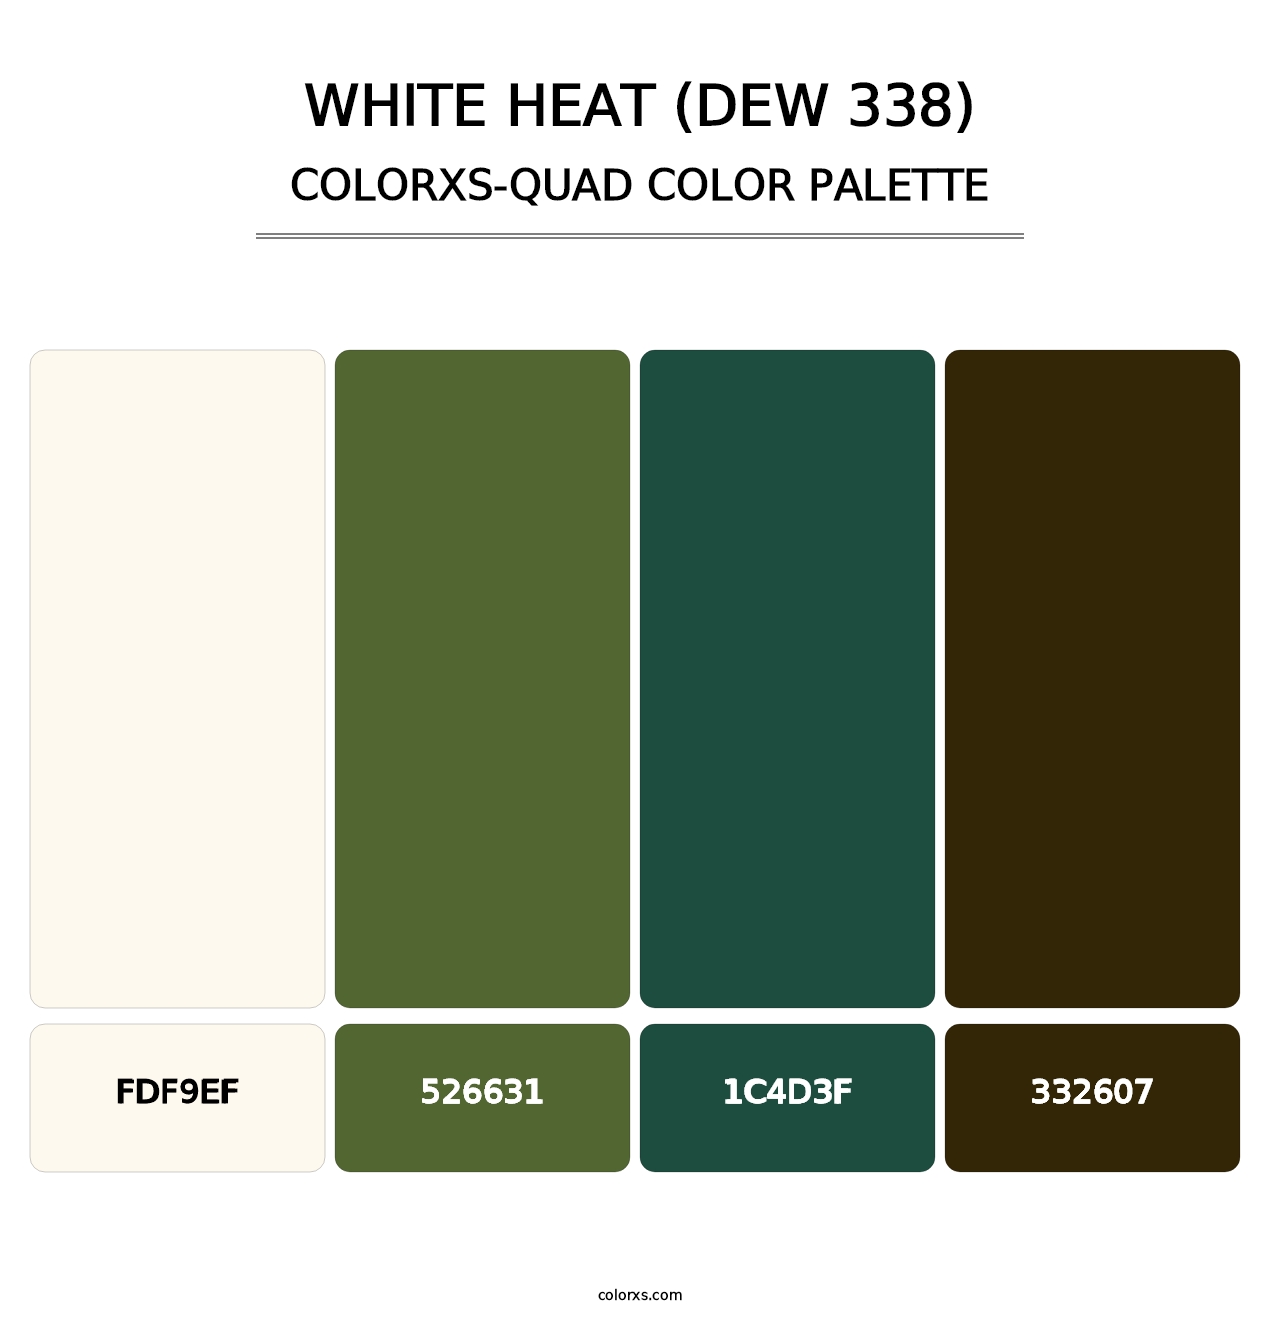 White Heat (DEW 338) - Colorxs Quad Palette